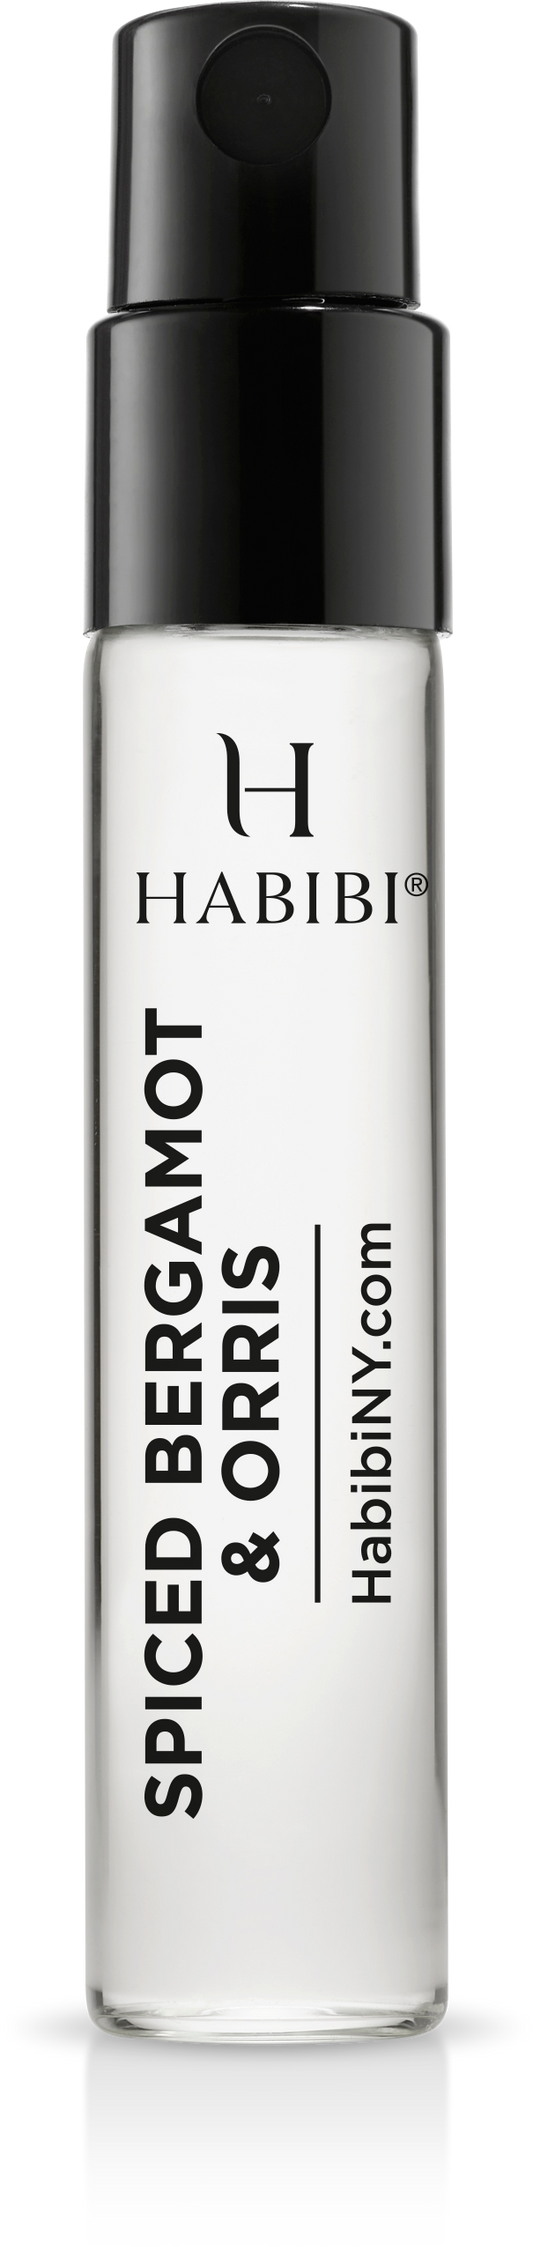 Spiced Bergamot & Orris Sample Vial